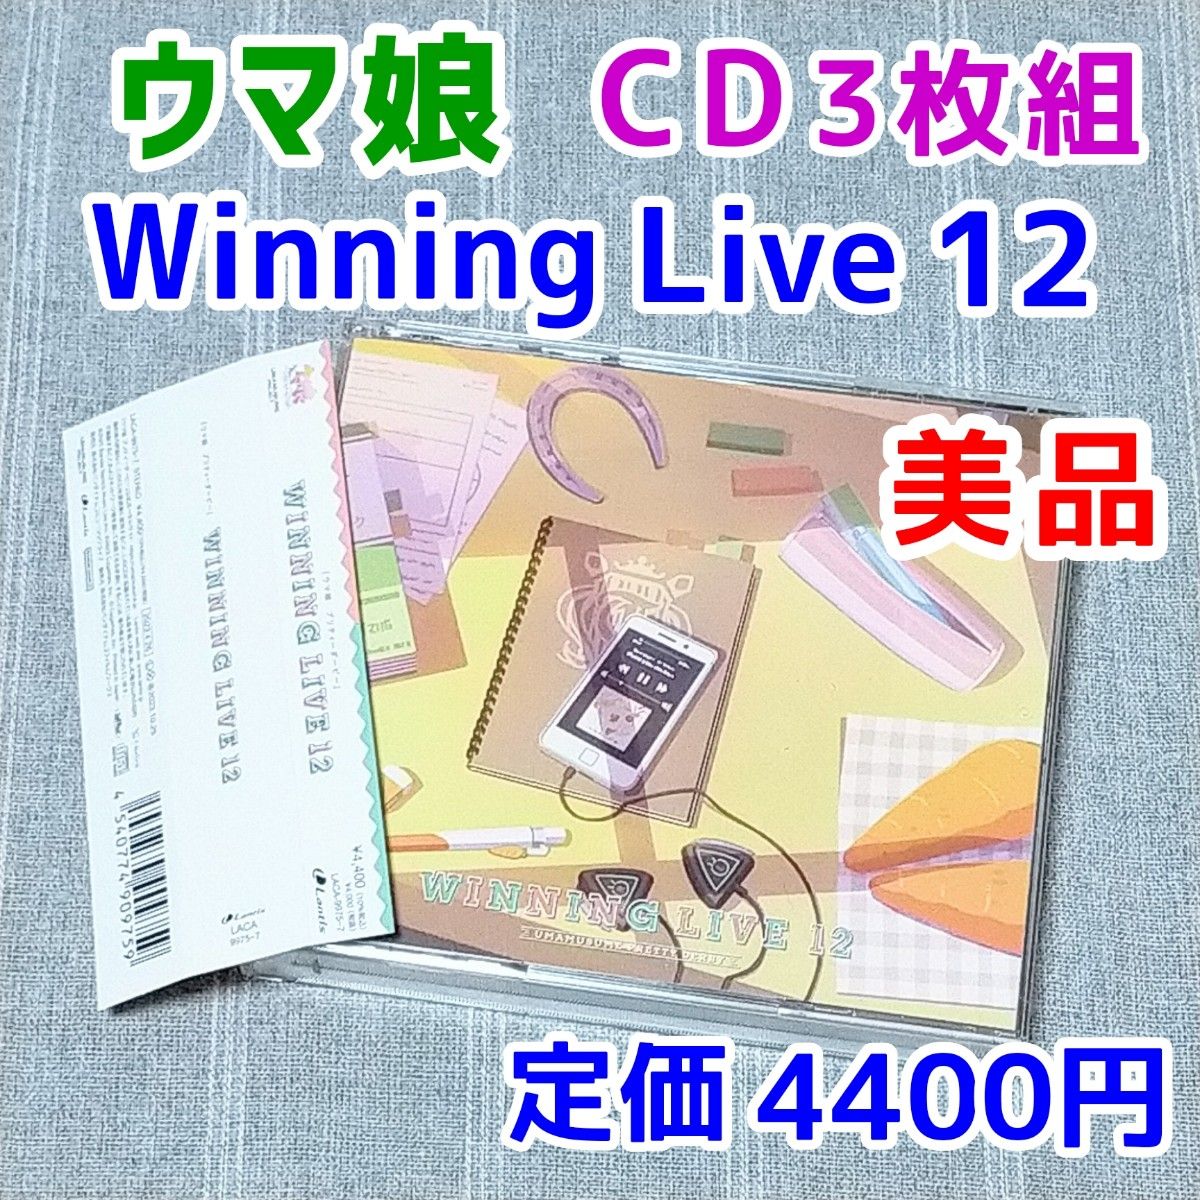 ウマ娘 プリティーダービー」WINNING LIVE 12 CD3枚組 - アニメ